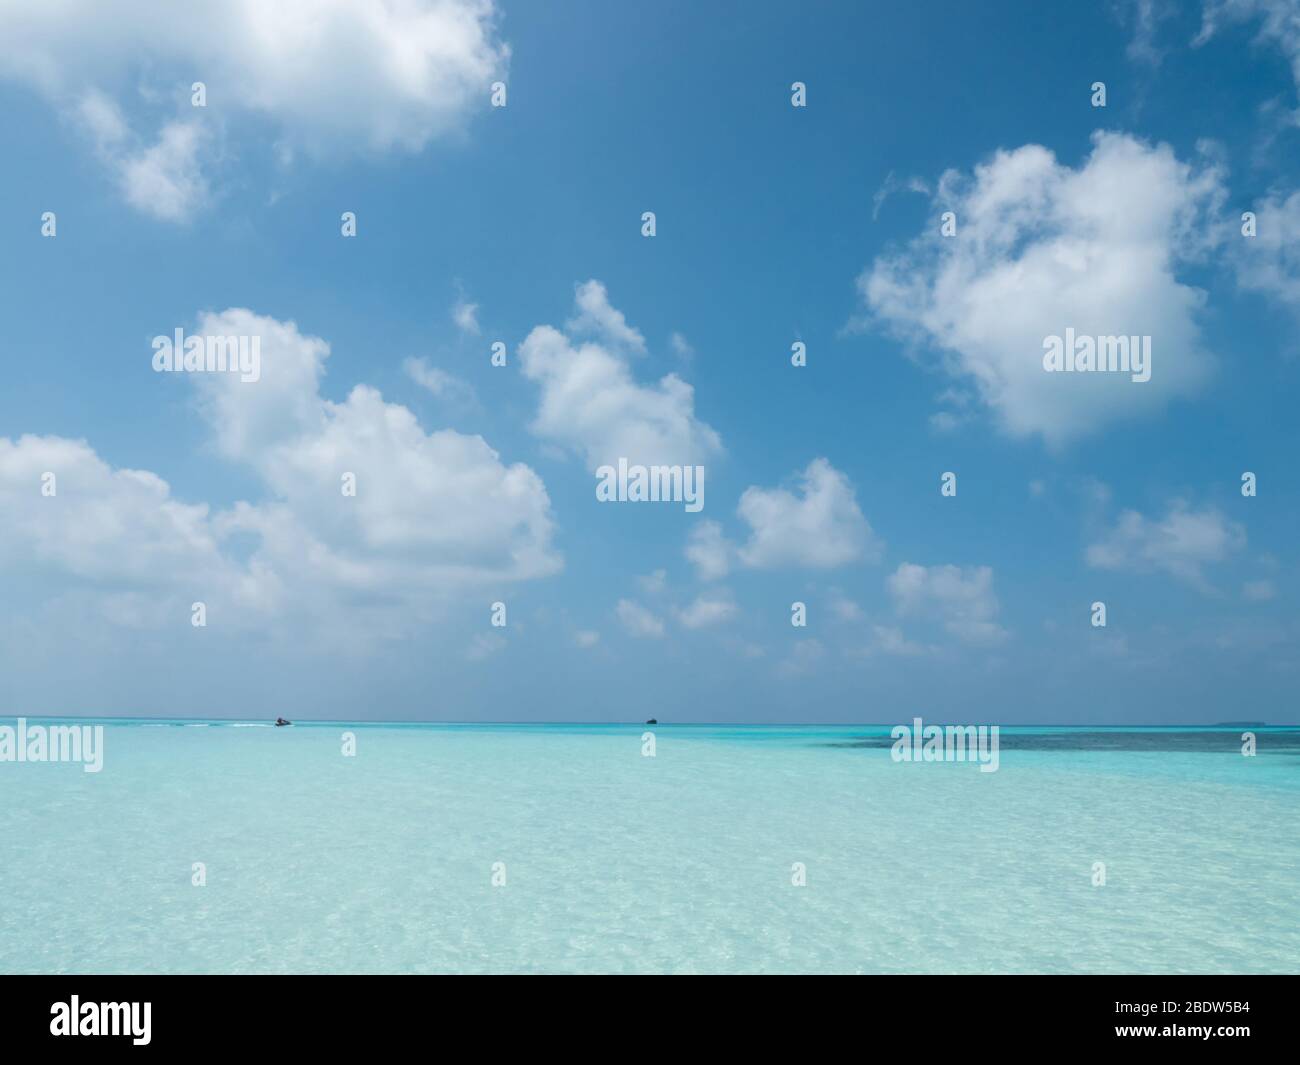 Panorama tropical des Maldives. Paysage idyllique sur l'île de Meeru avec ciel nuageux et océan Indien. Banque D'Images